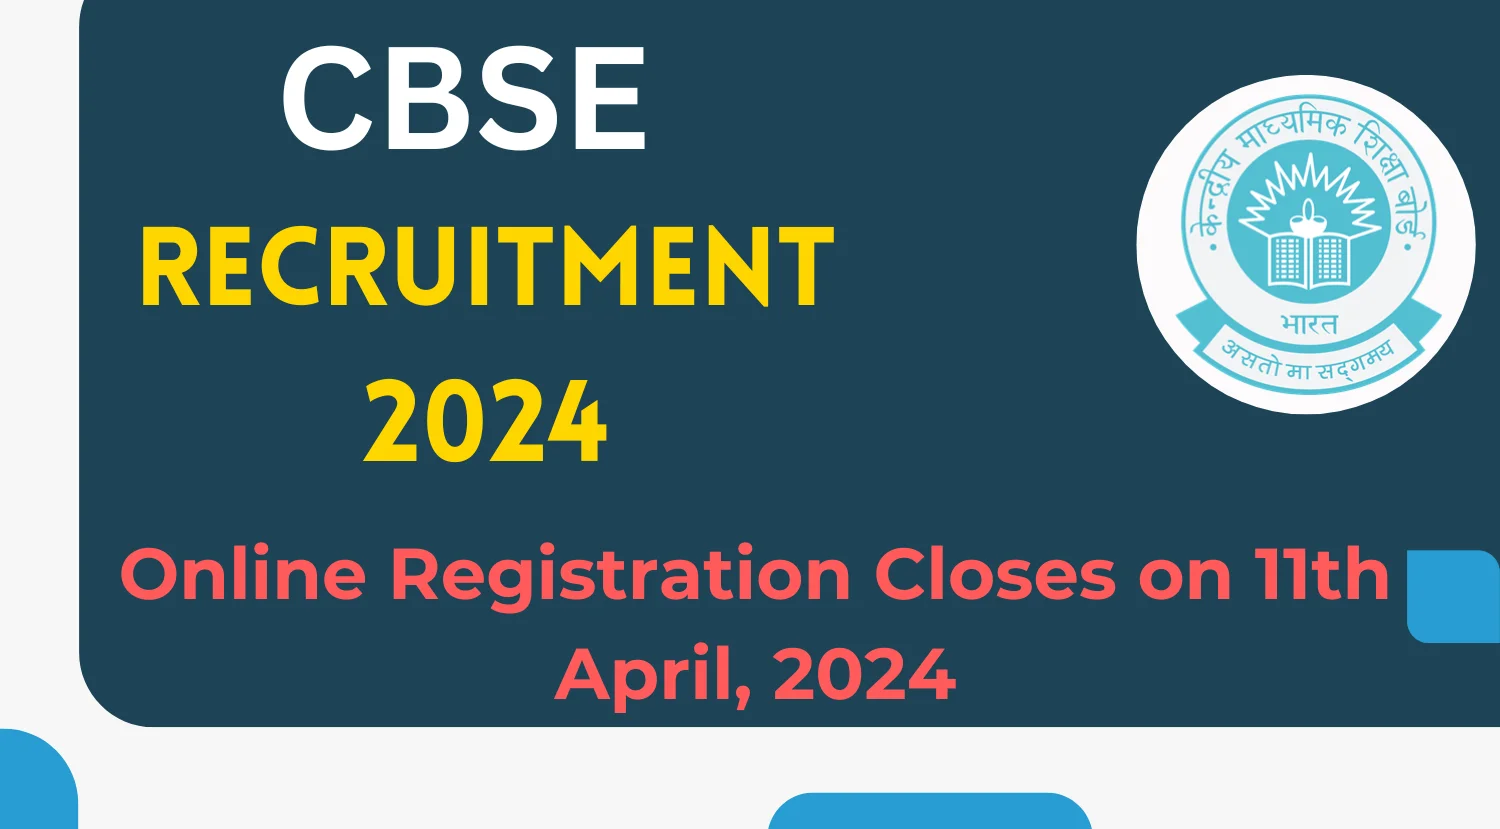 ABC-Rekrutierung der CBSE Group 2024